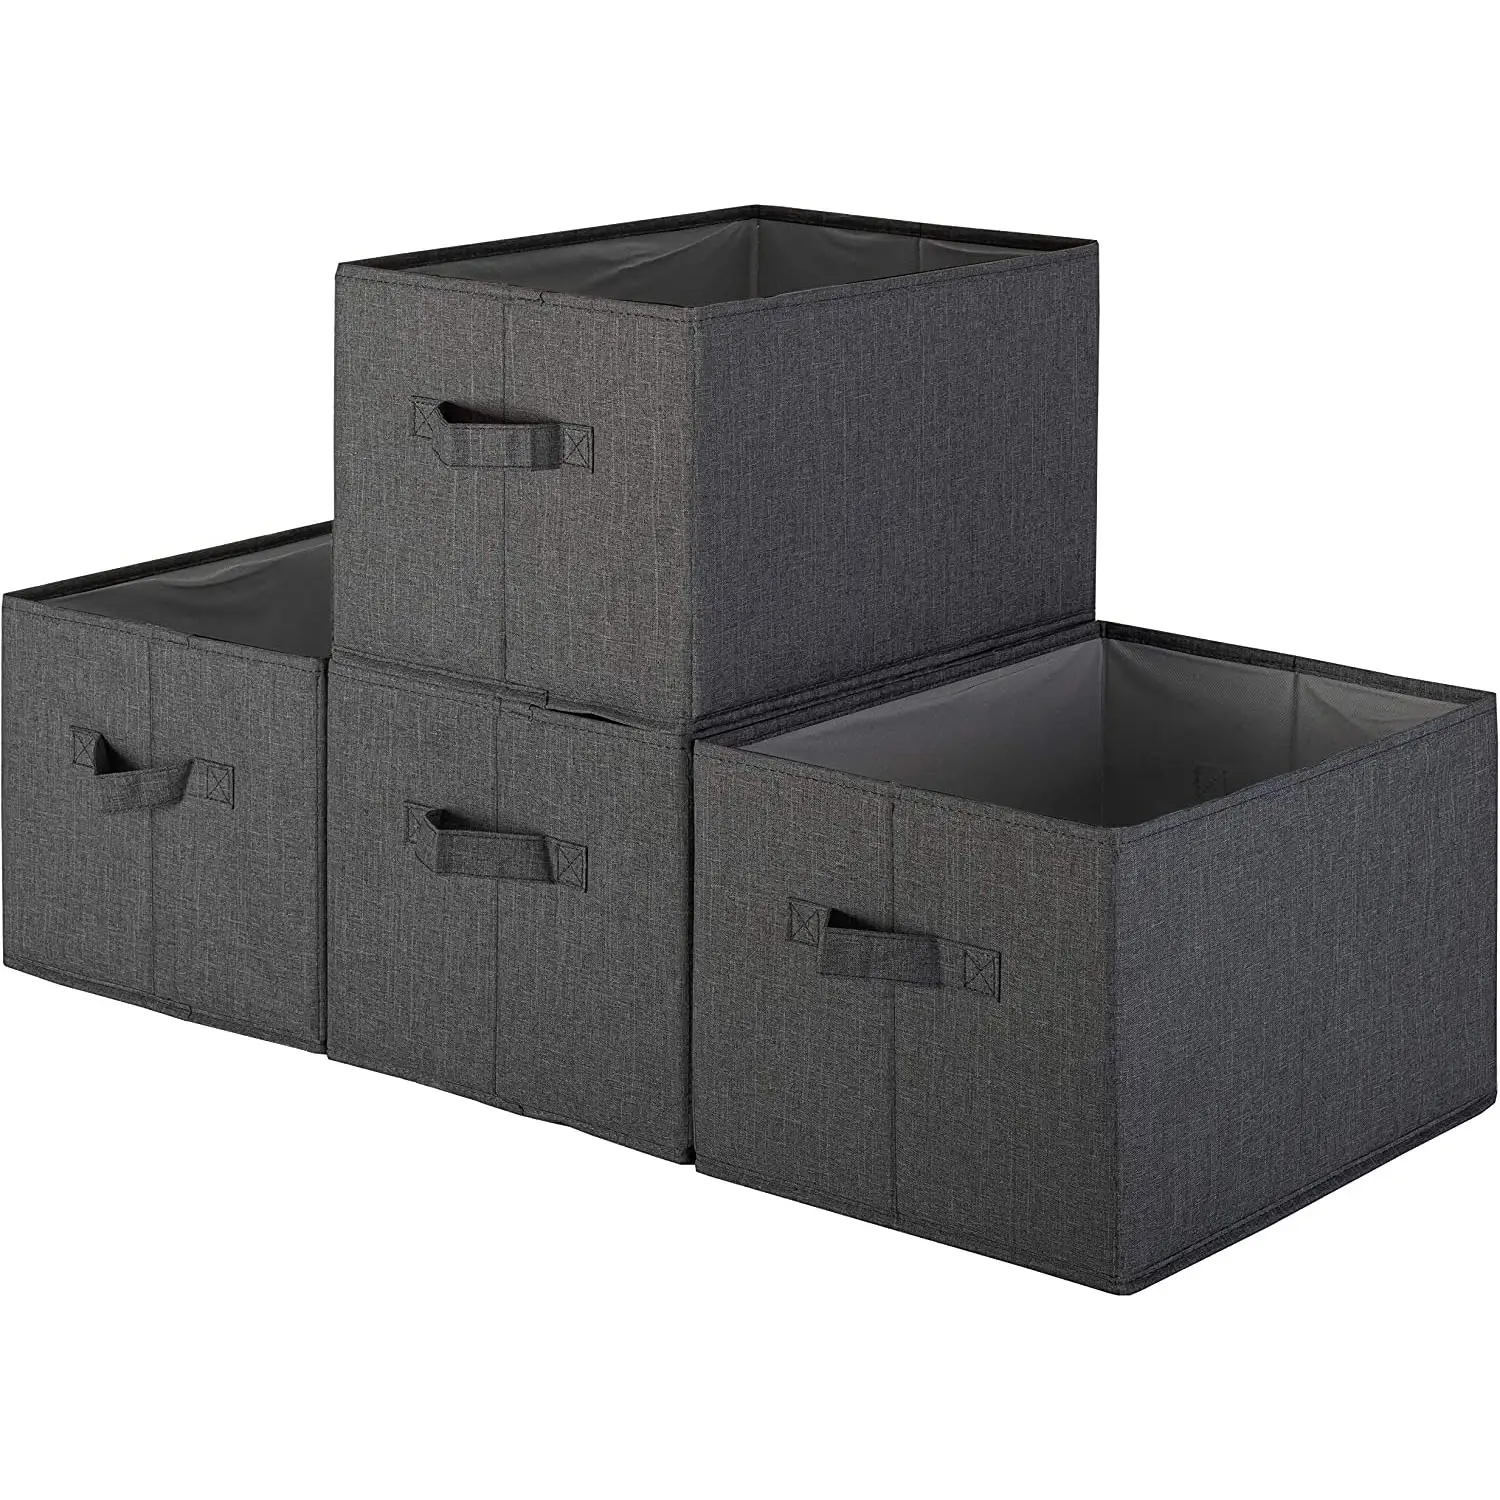 Foldable आयोजन टोकरी बिन भंडारण टोकरी भंडारण डिब्बे कोठरी आयोजक भंडारण बॉक्स के लिए घर